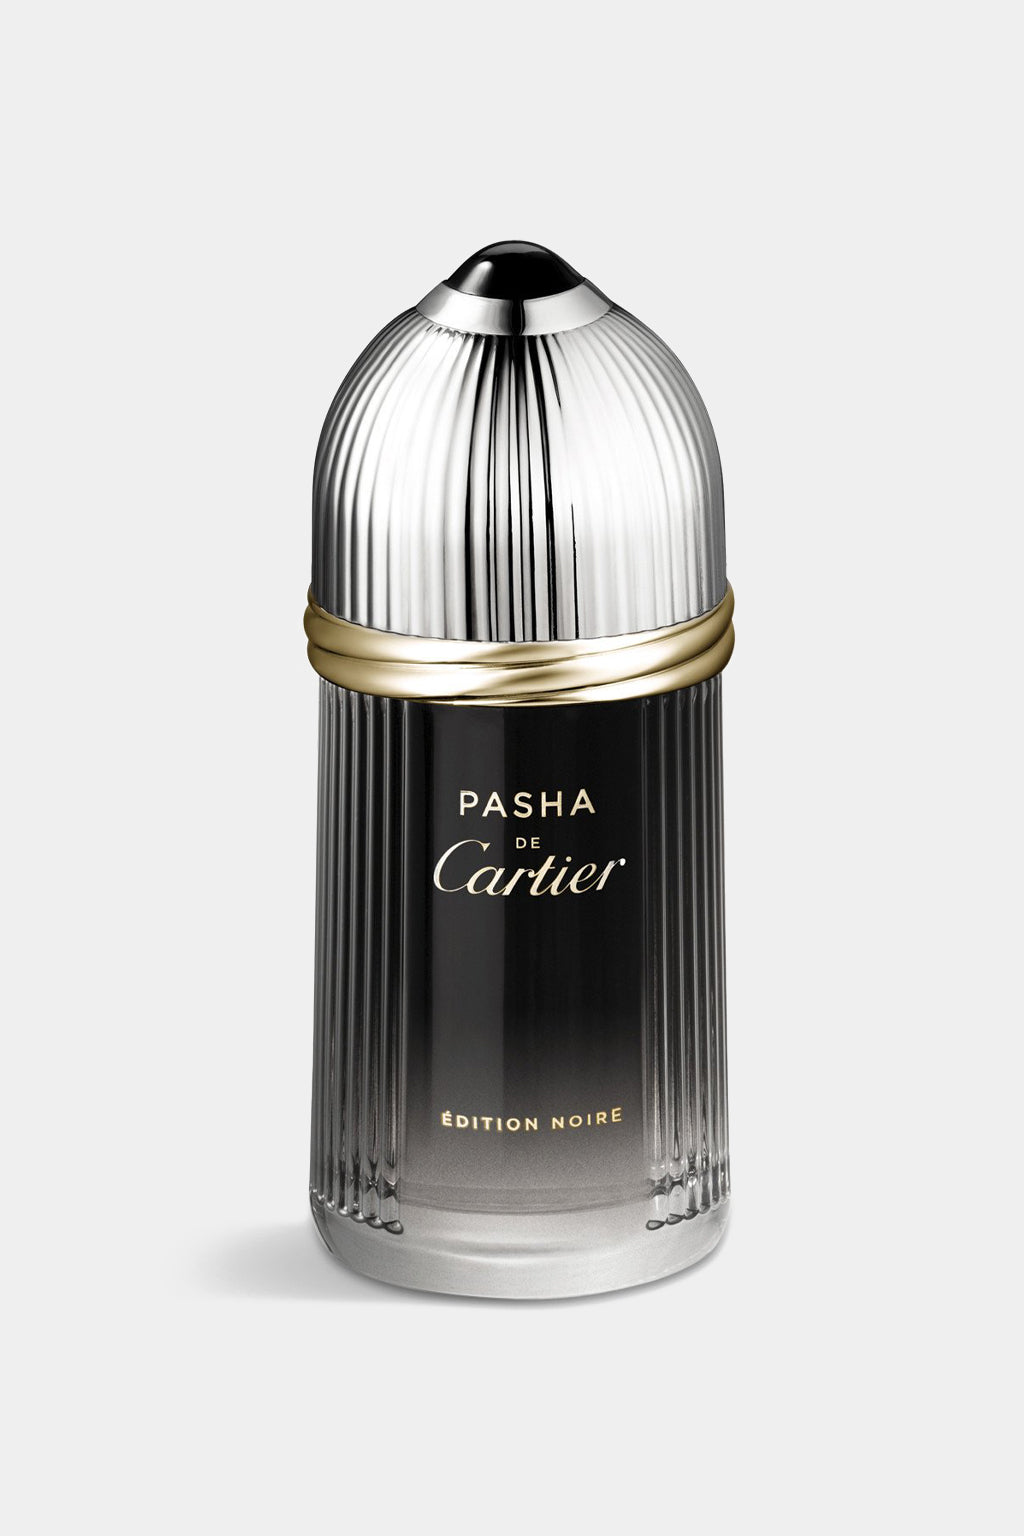 Cartier - Pasha De Cartier Edition Noire Eau de Toilette